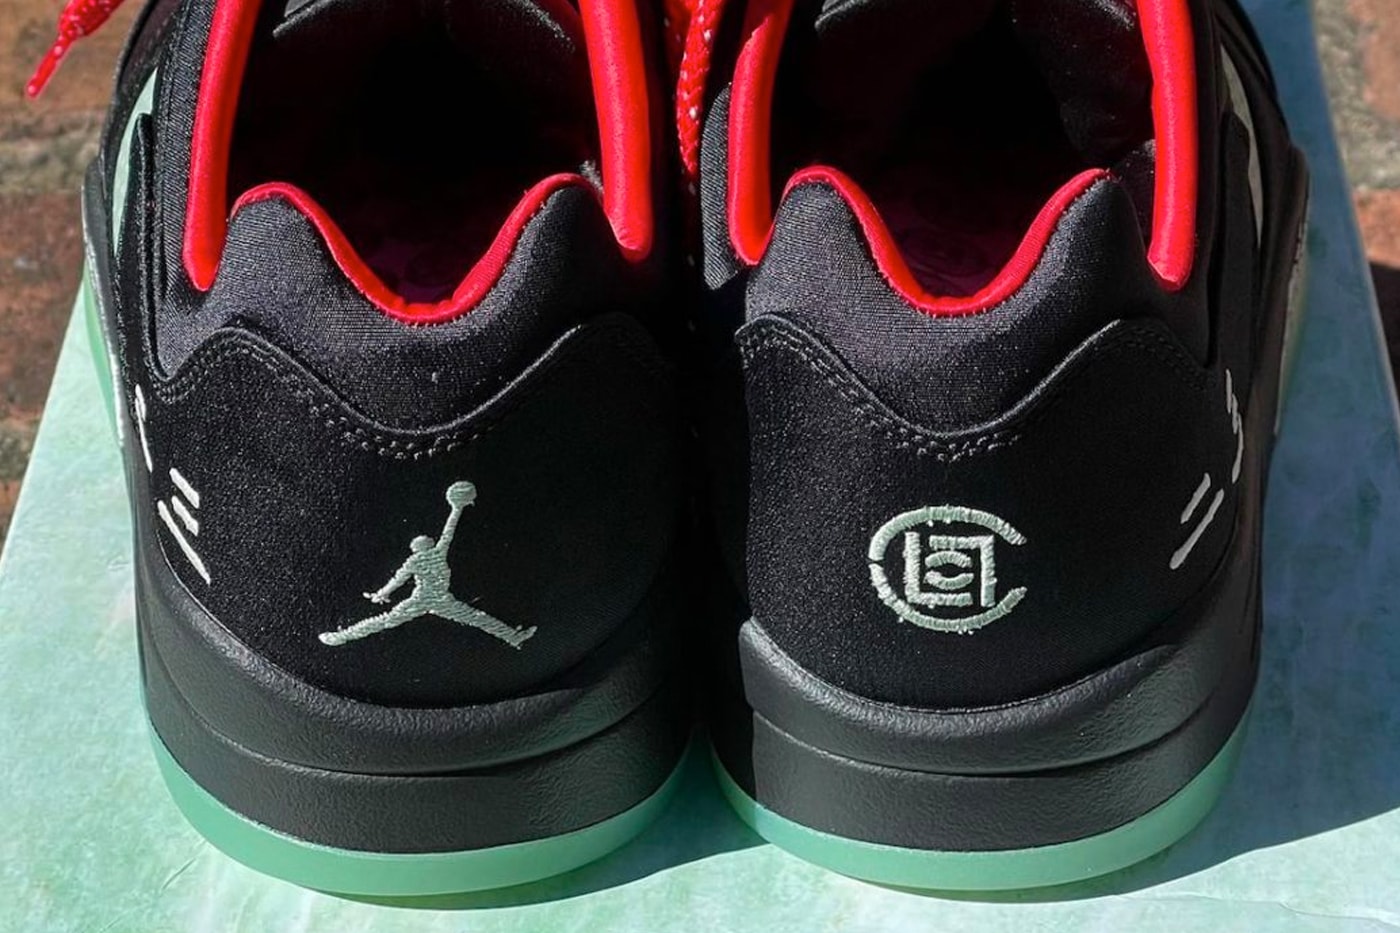 CLOT Air Jordan 5 Low Closer Look Release Info Date Buy Price 